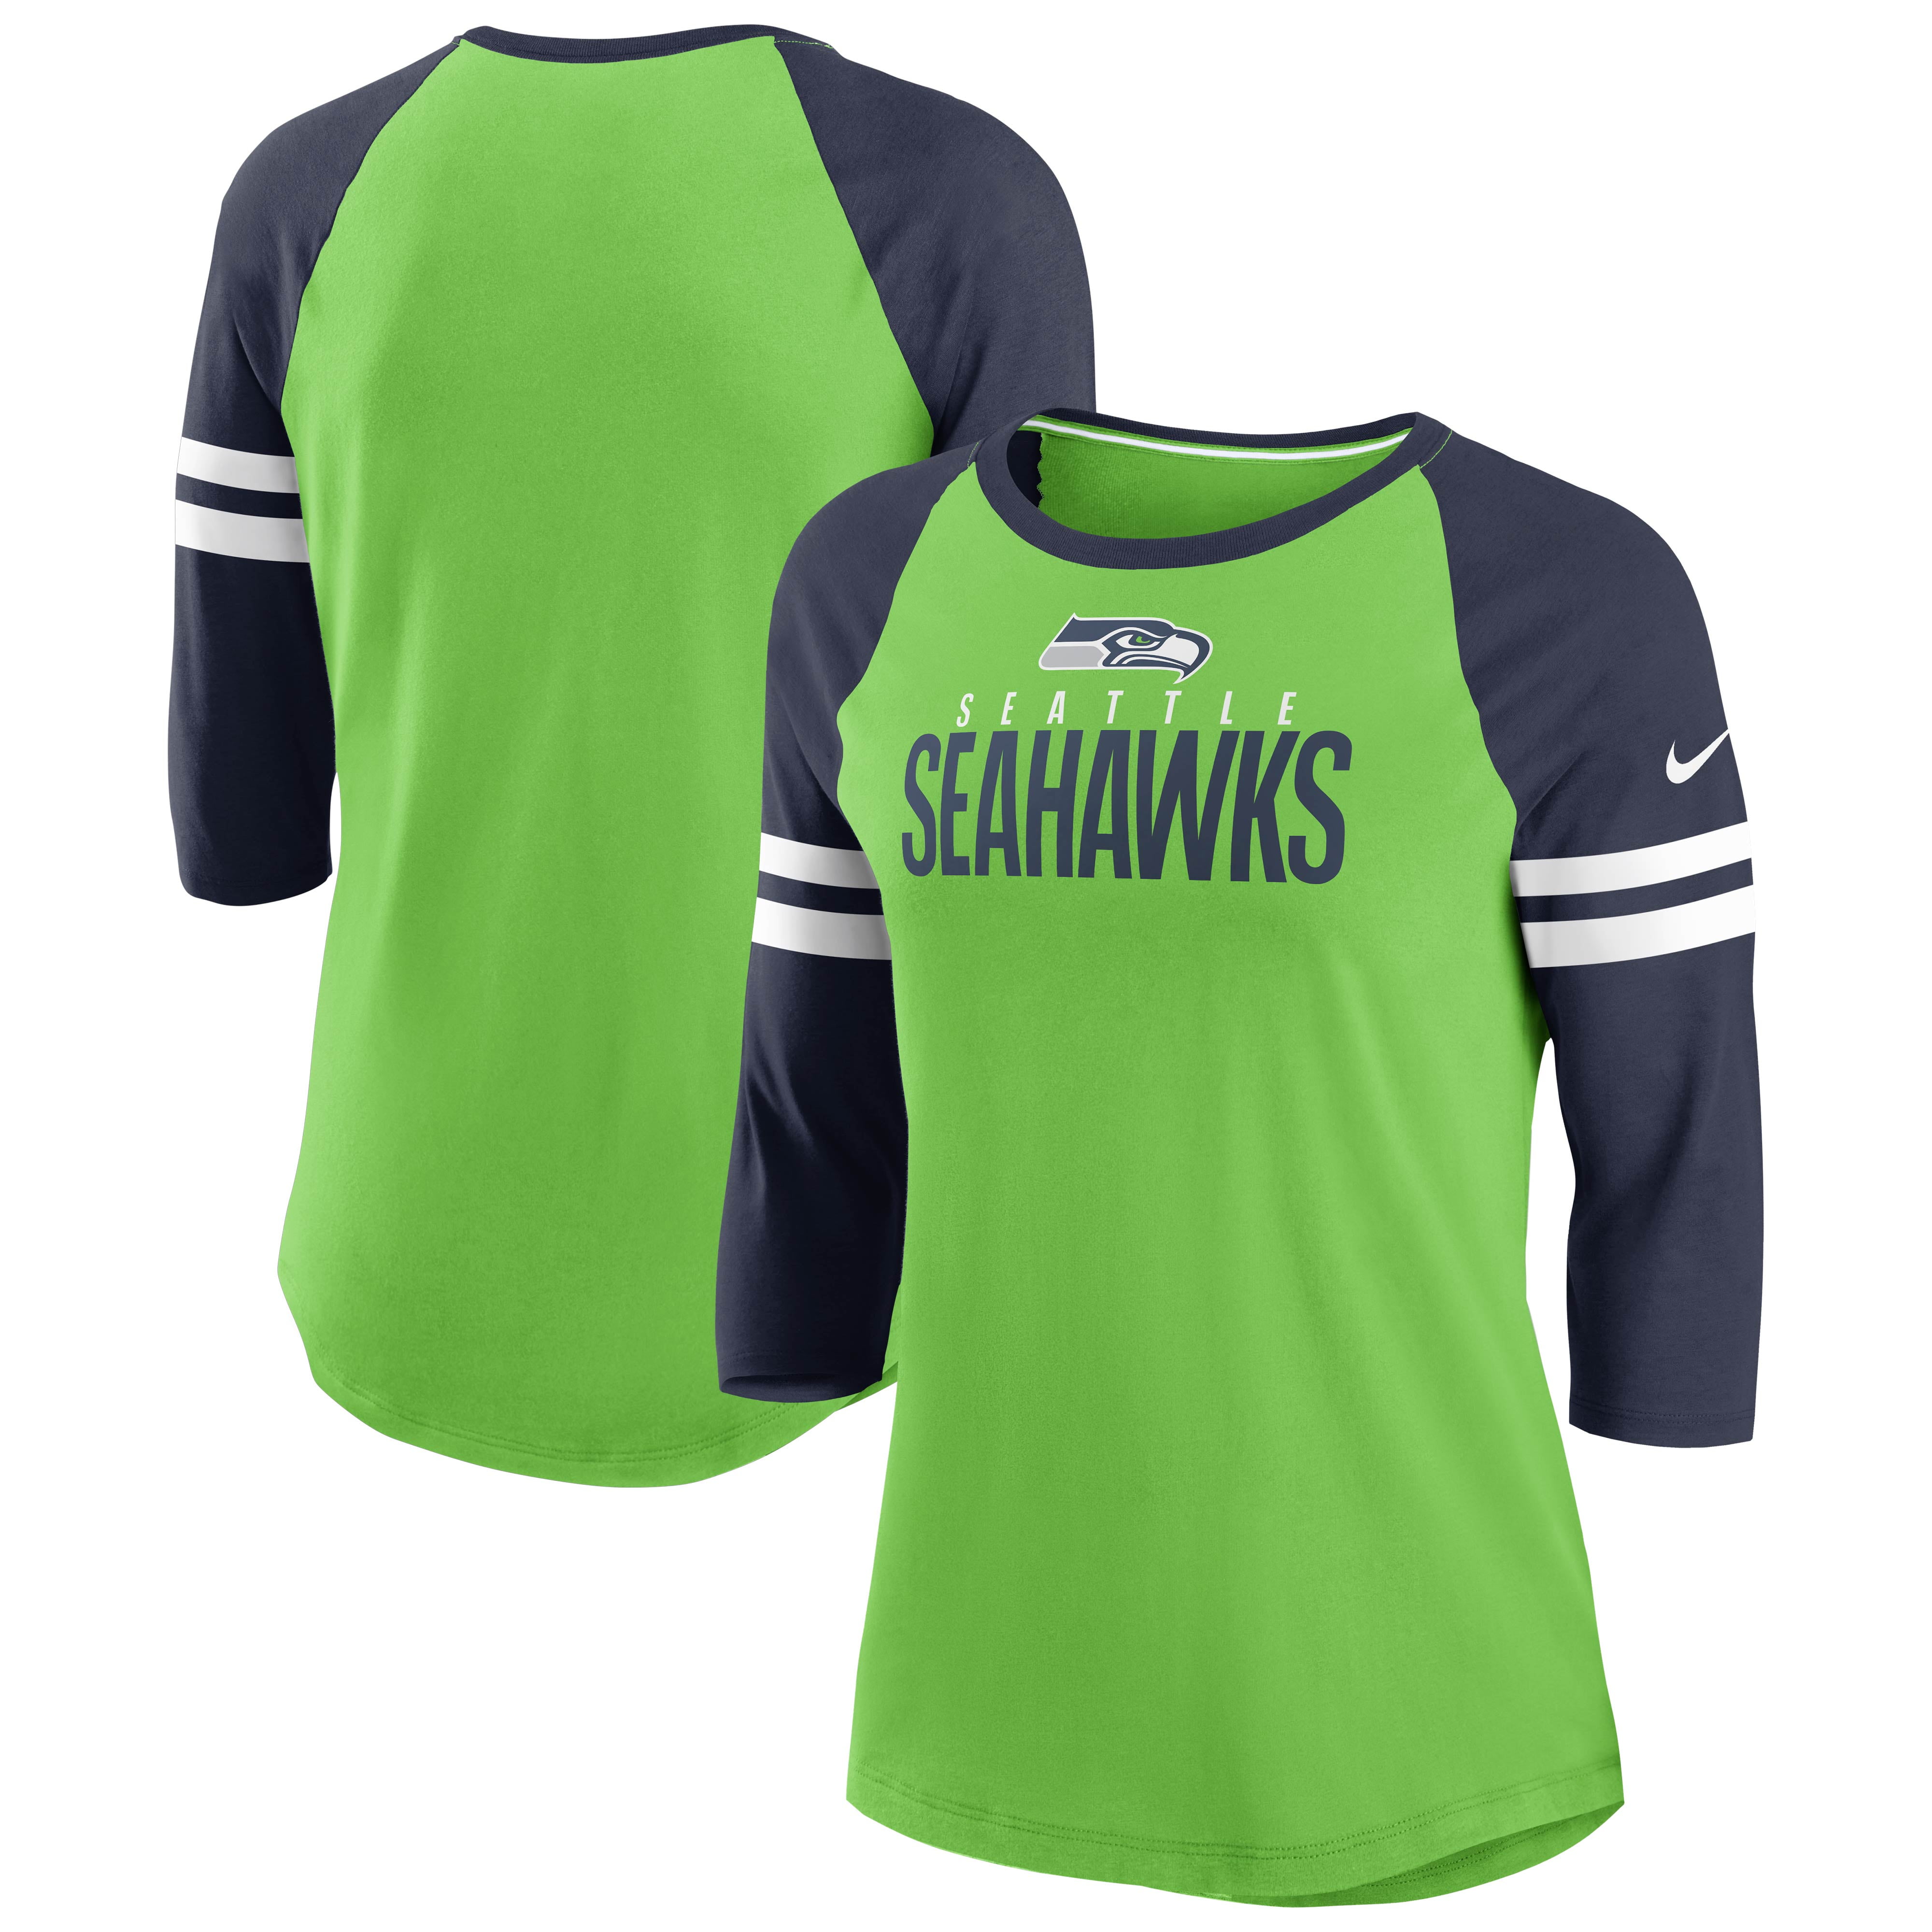 Seattle Seahawks Womens - Walmart.com